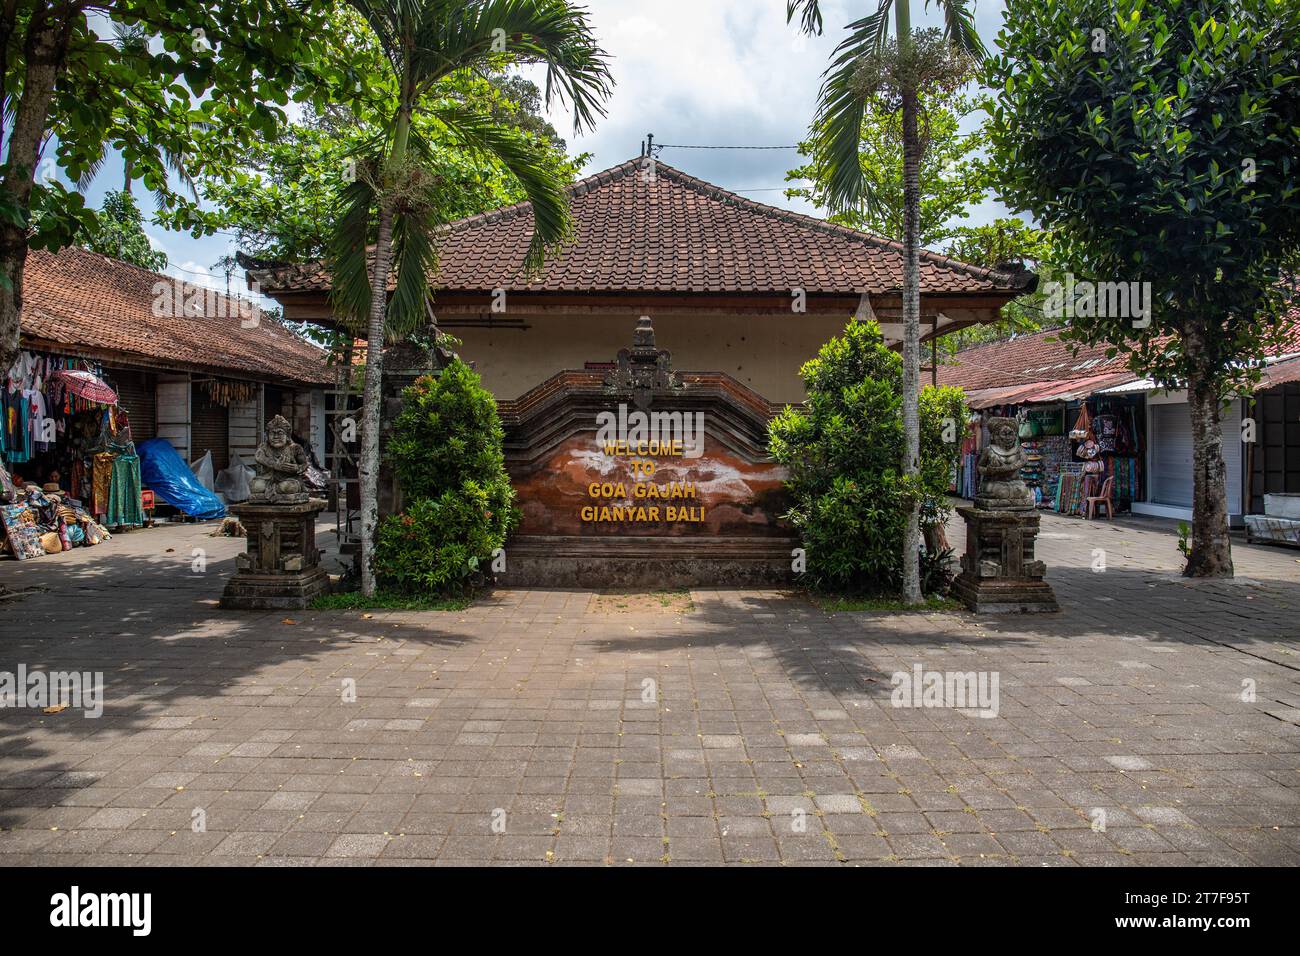 Goa Gajah - Elefantenhöhle. Dieser Park-ähnliche Tempelkomplex bietet einen wunderschönen Garten mit alten Bäumen und tropischen Pflanzen. Tolle verzauberte Wege Bali Stockfoto